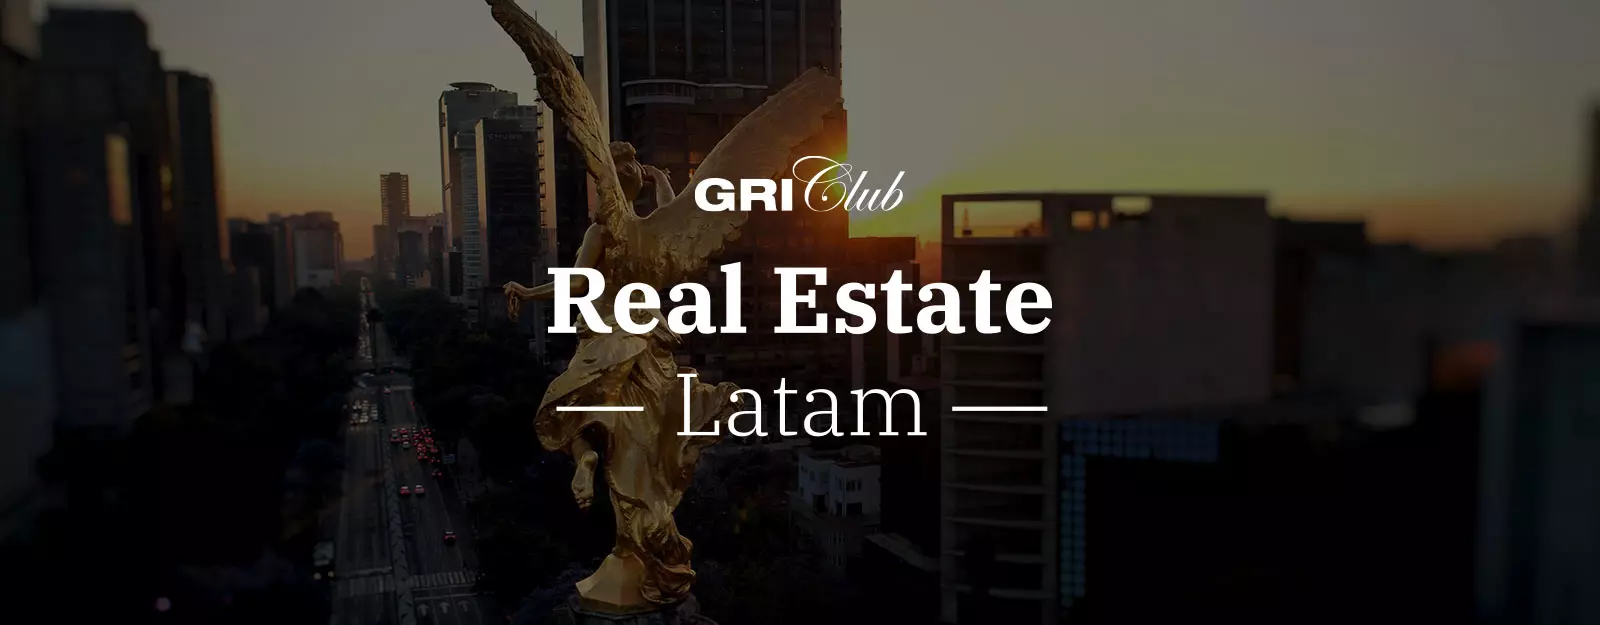 Real Estate Club Latam